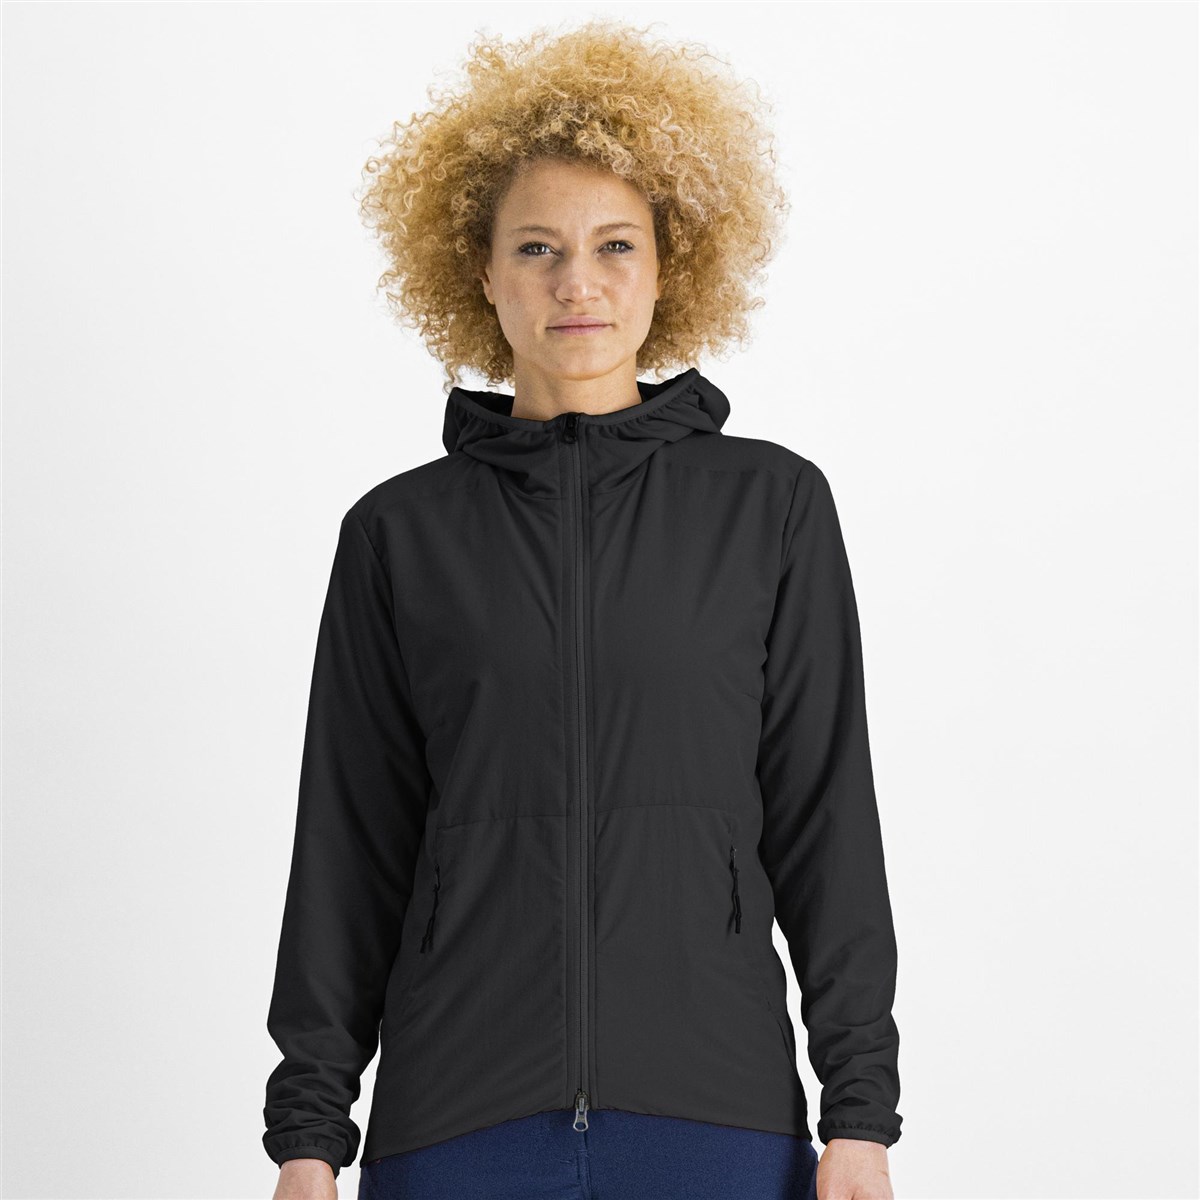 Sportful Metro Womens Light Long Sleeve Jacket product image